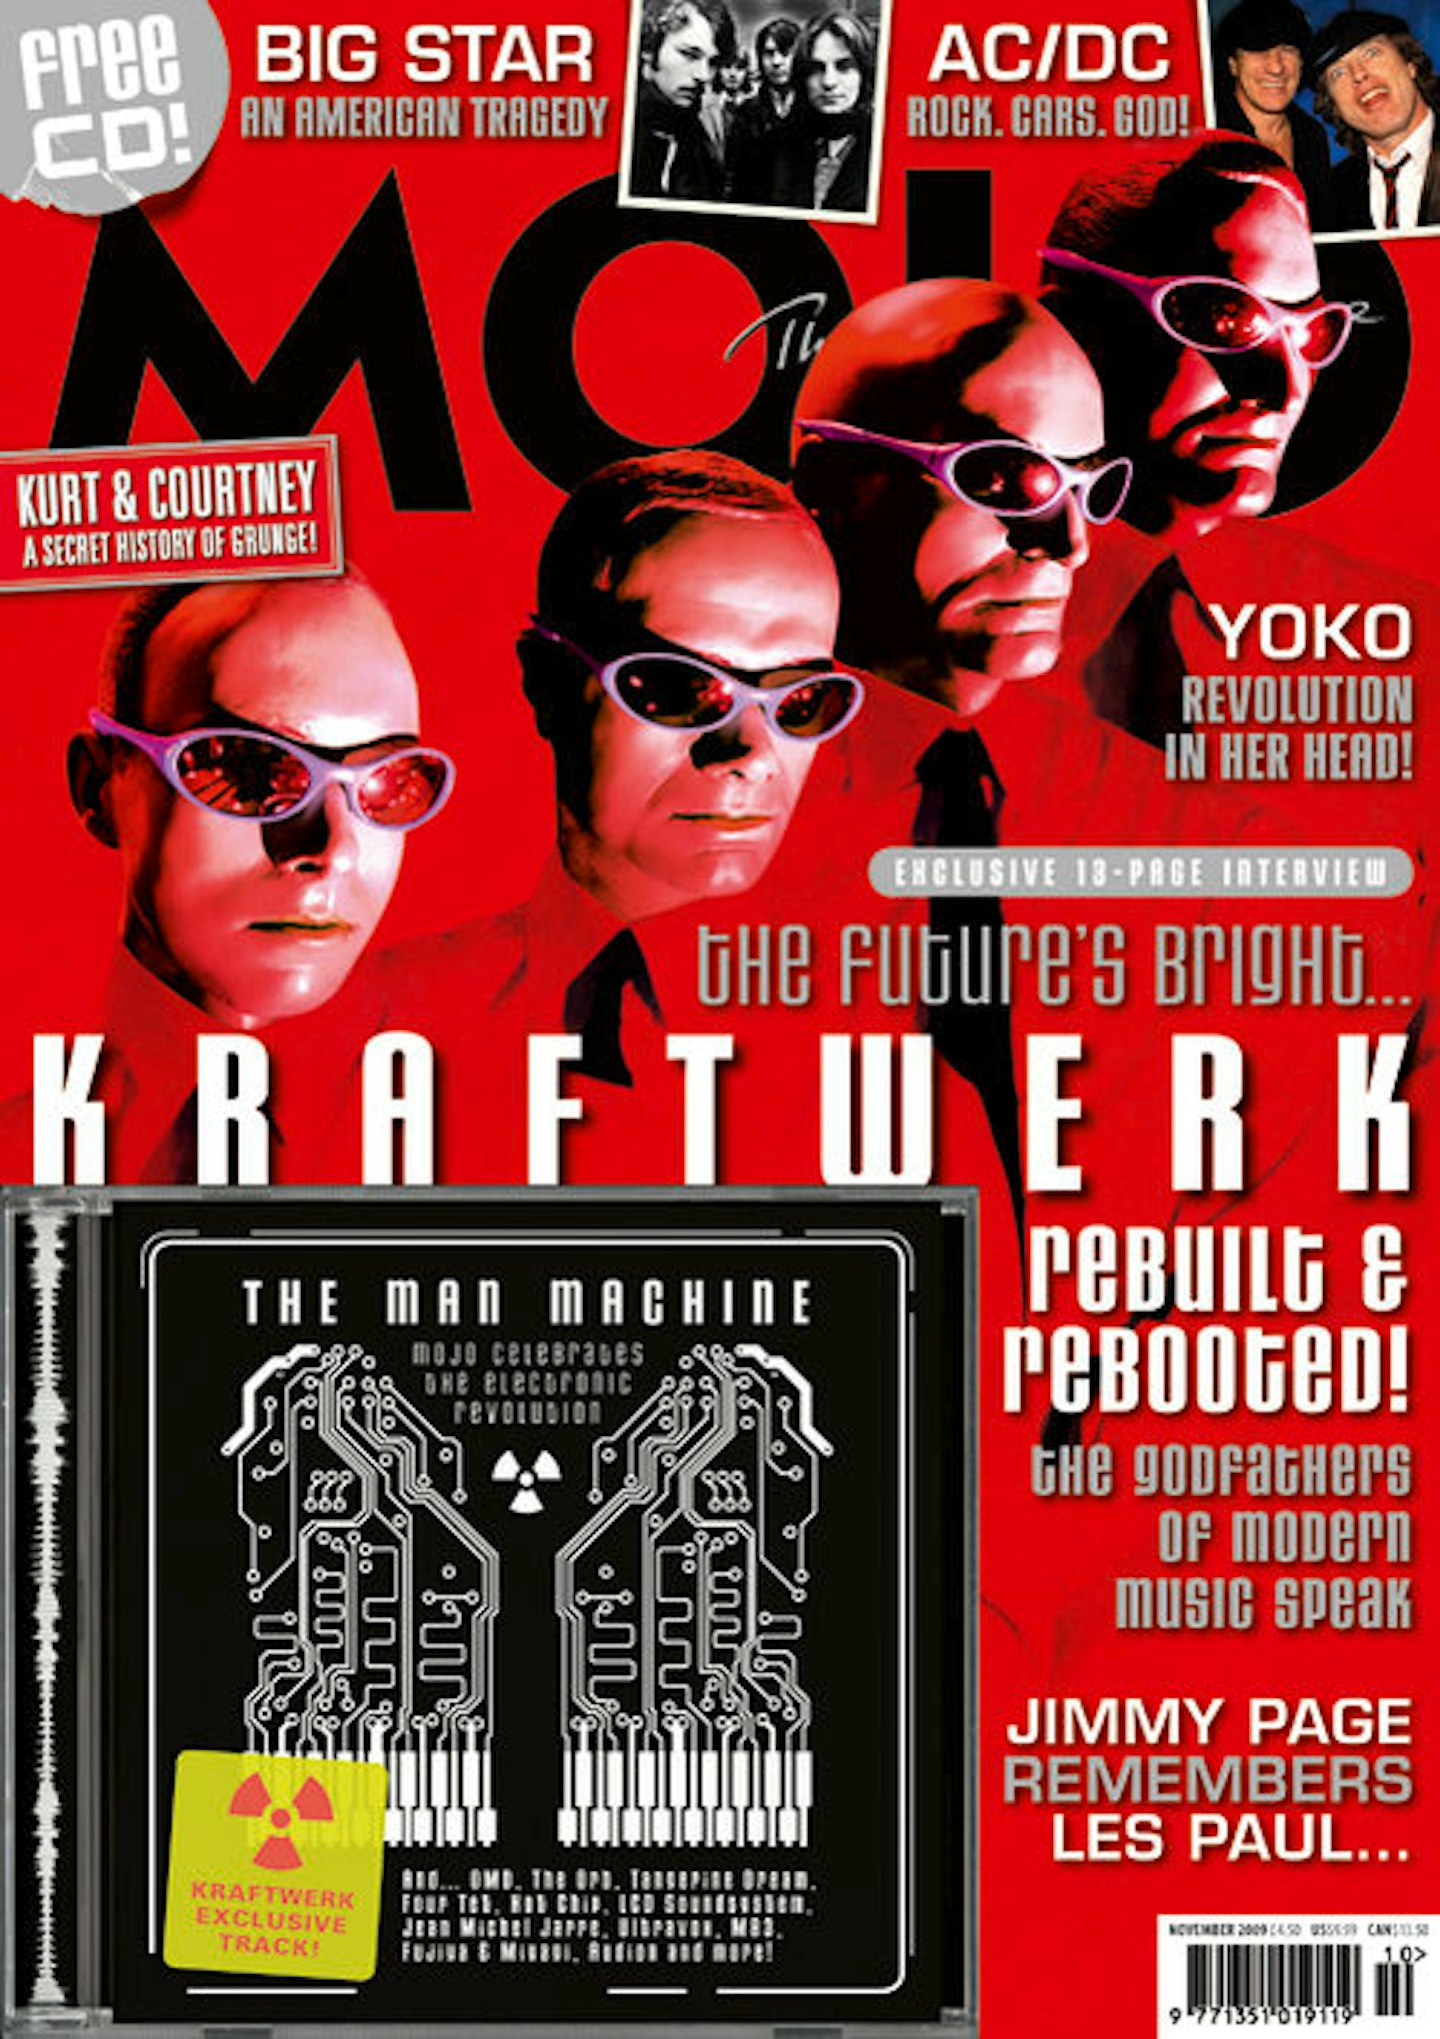 MOJO Issue 192 / October 2009